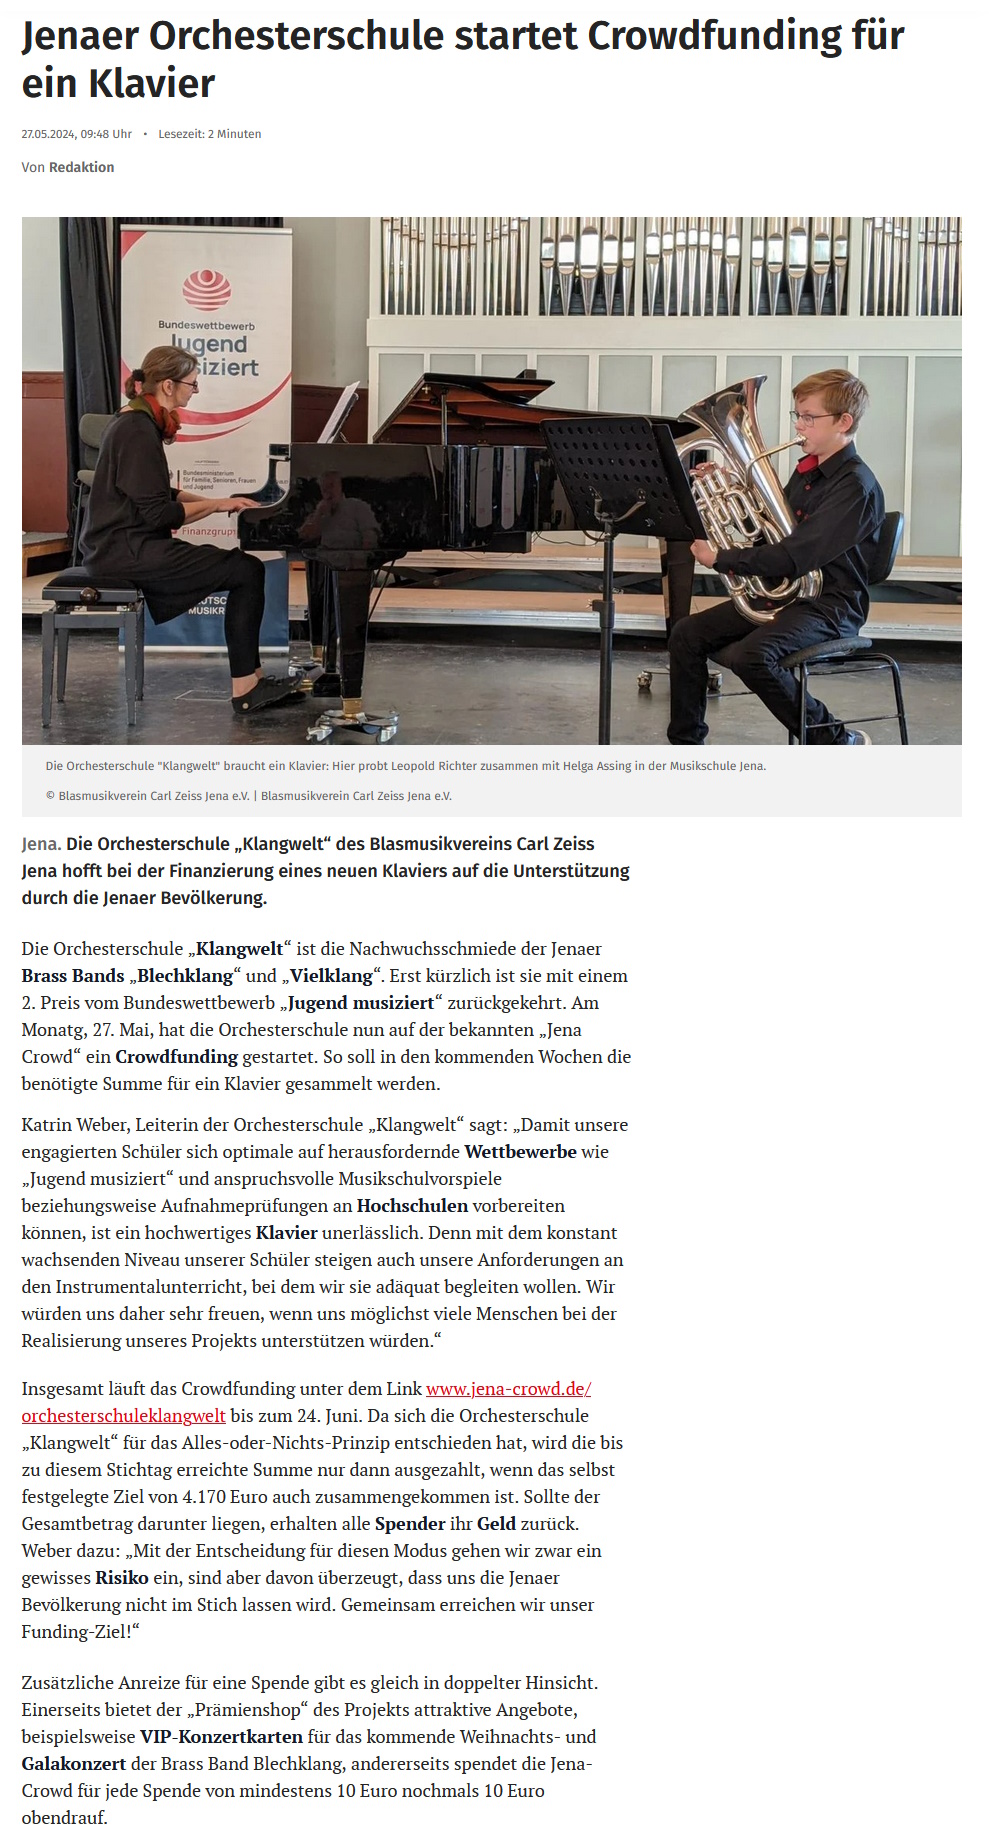 Artikel OTZ Orchesterschule KLANGwelt startet Crowdfunding für ein Klavier